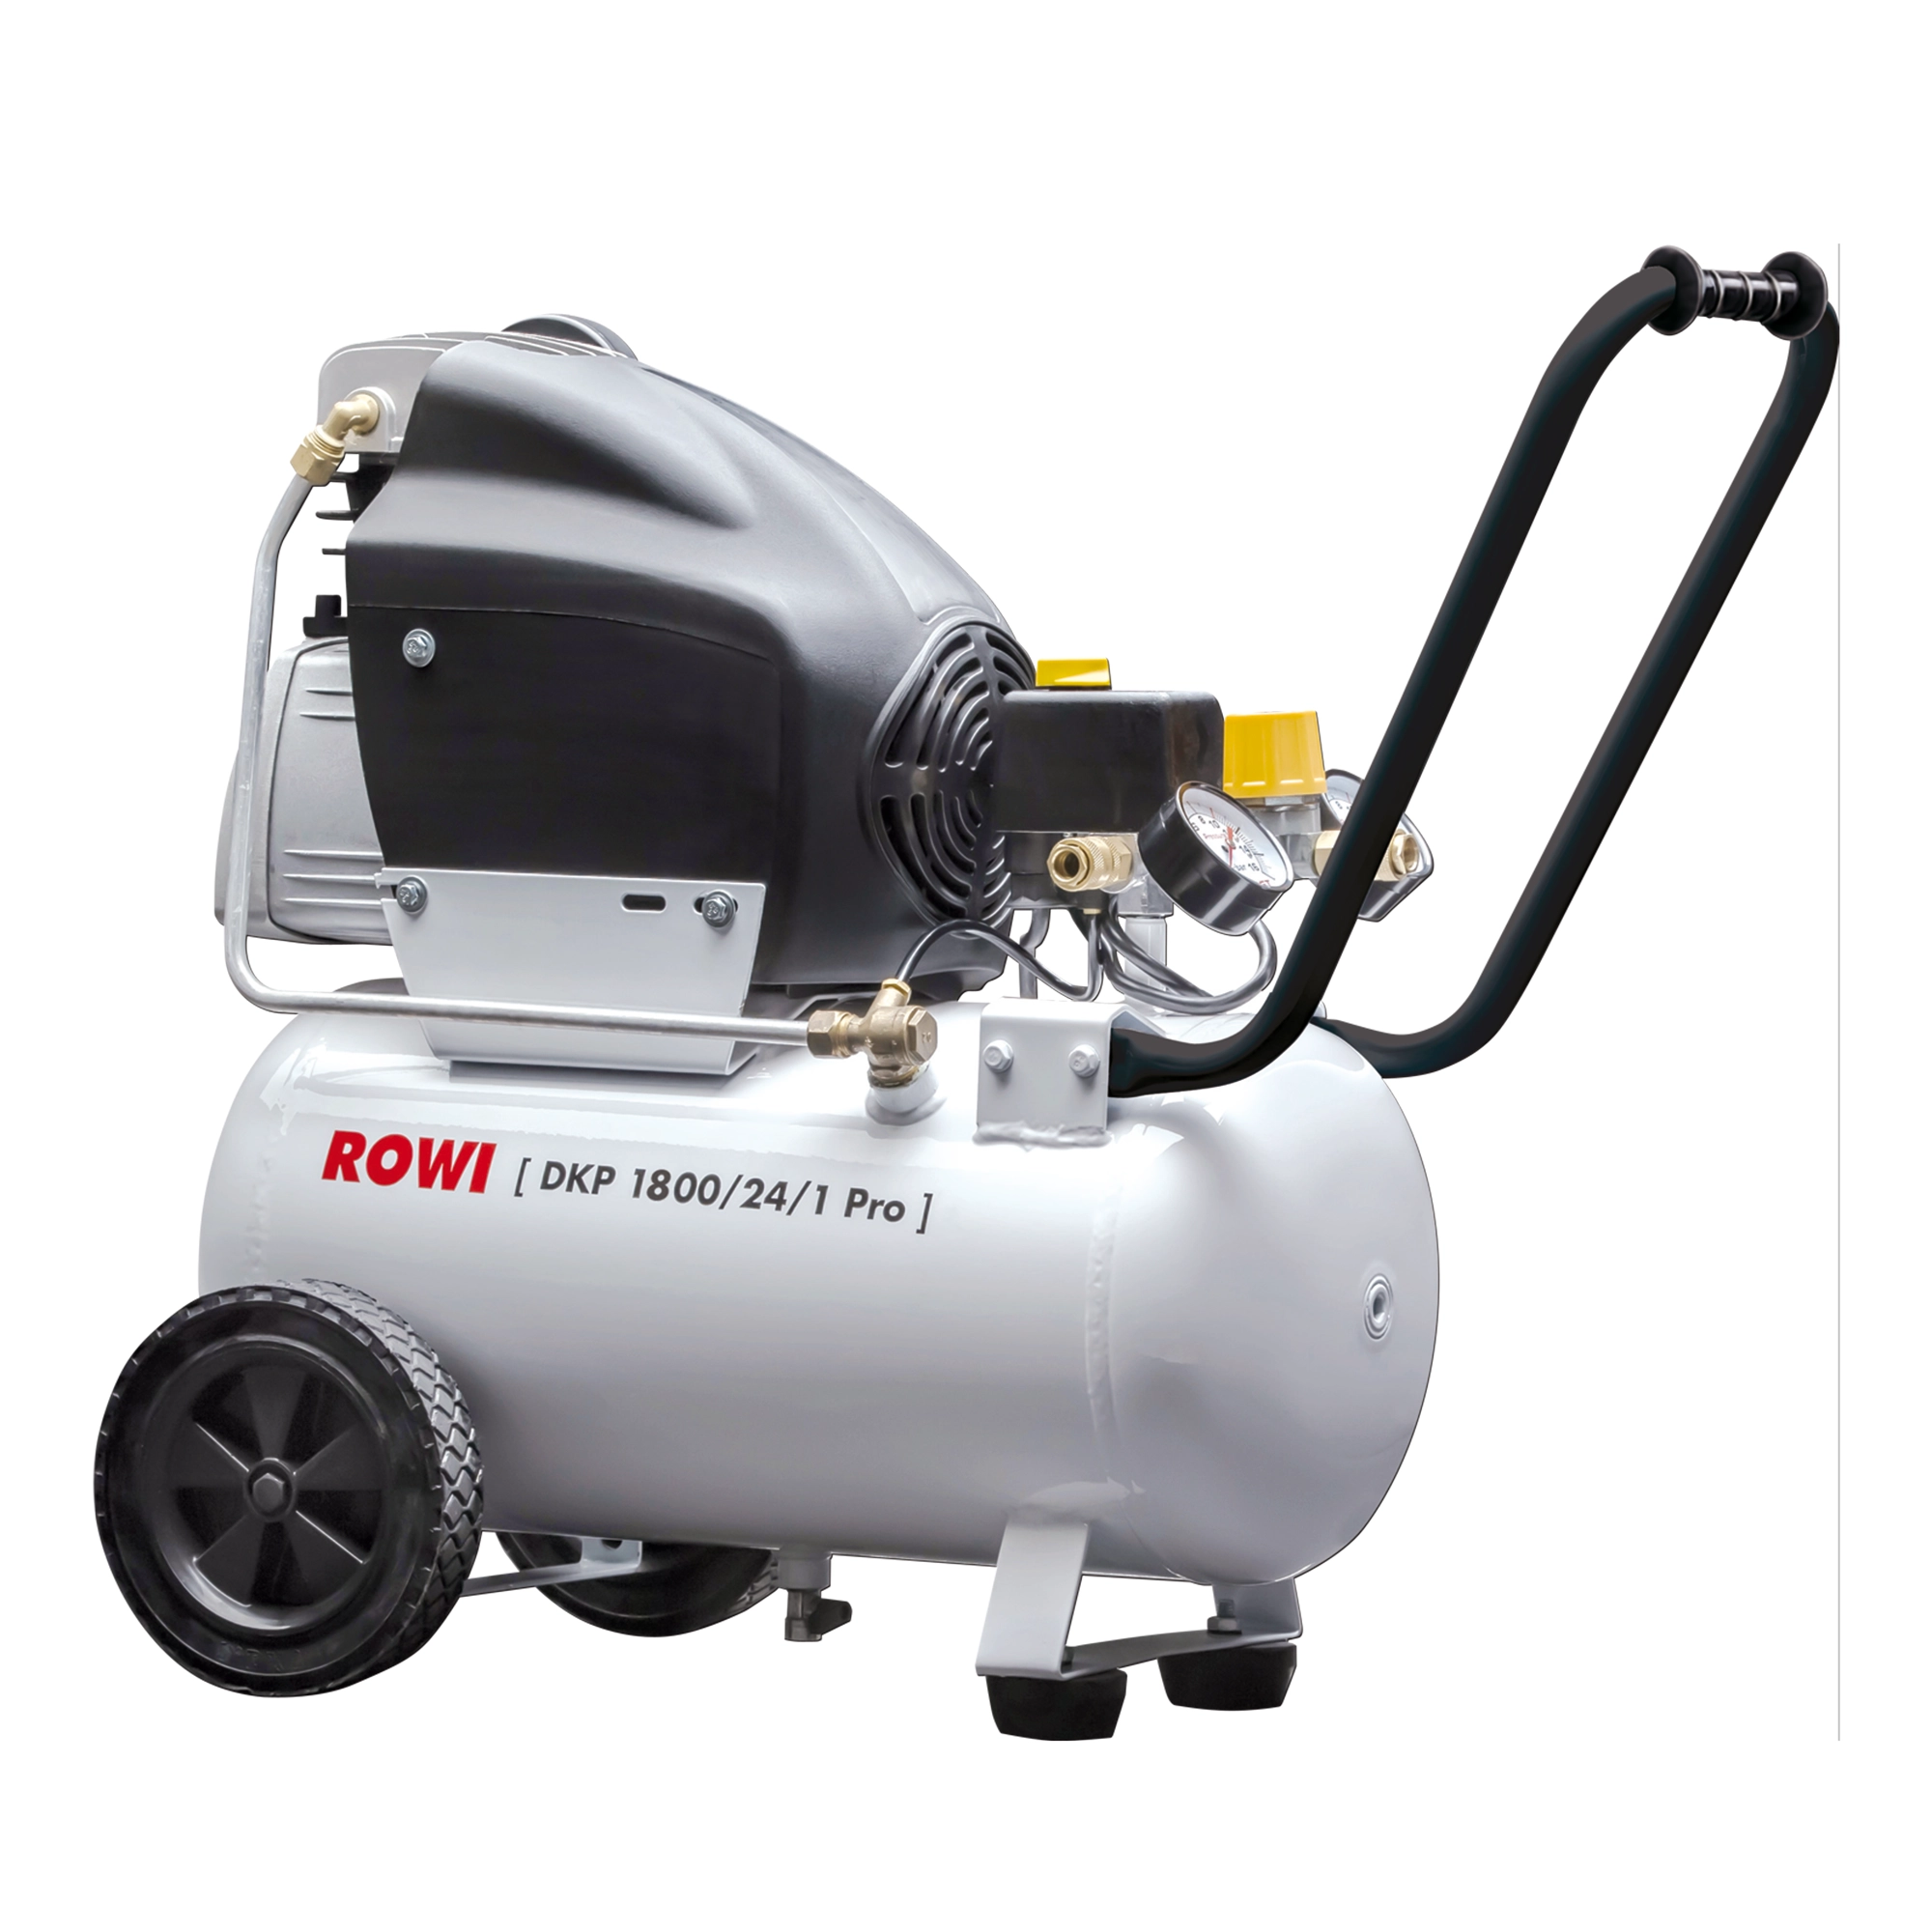 Rowi Kompressor 'DKP 1800/24/1 Pro' 10 bar, 117-142 l/min